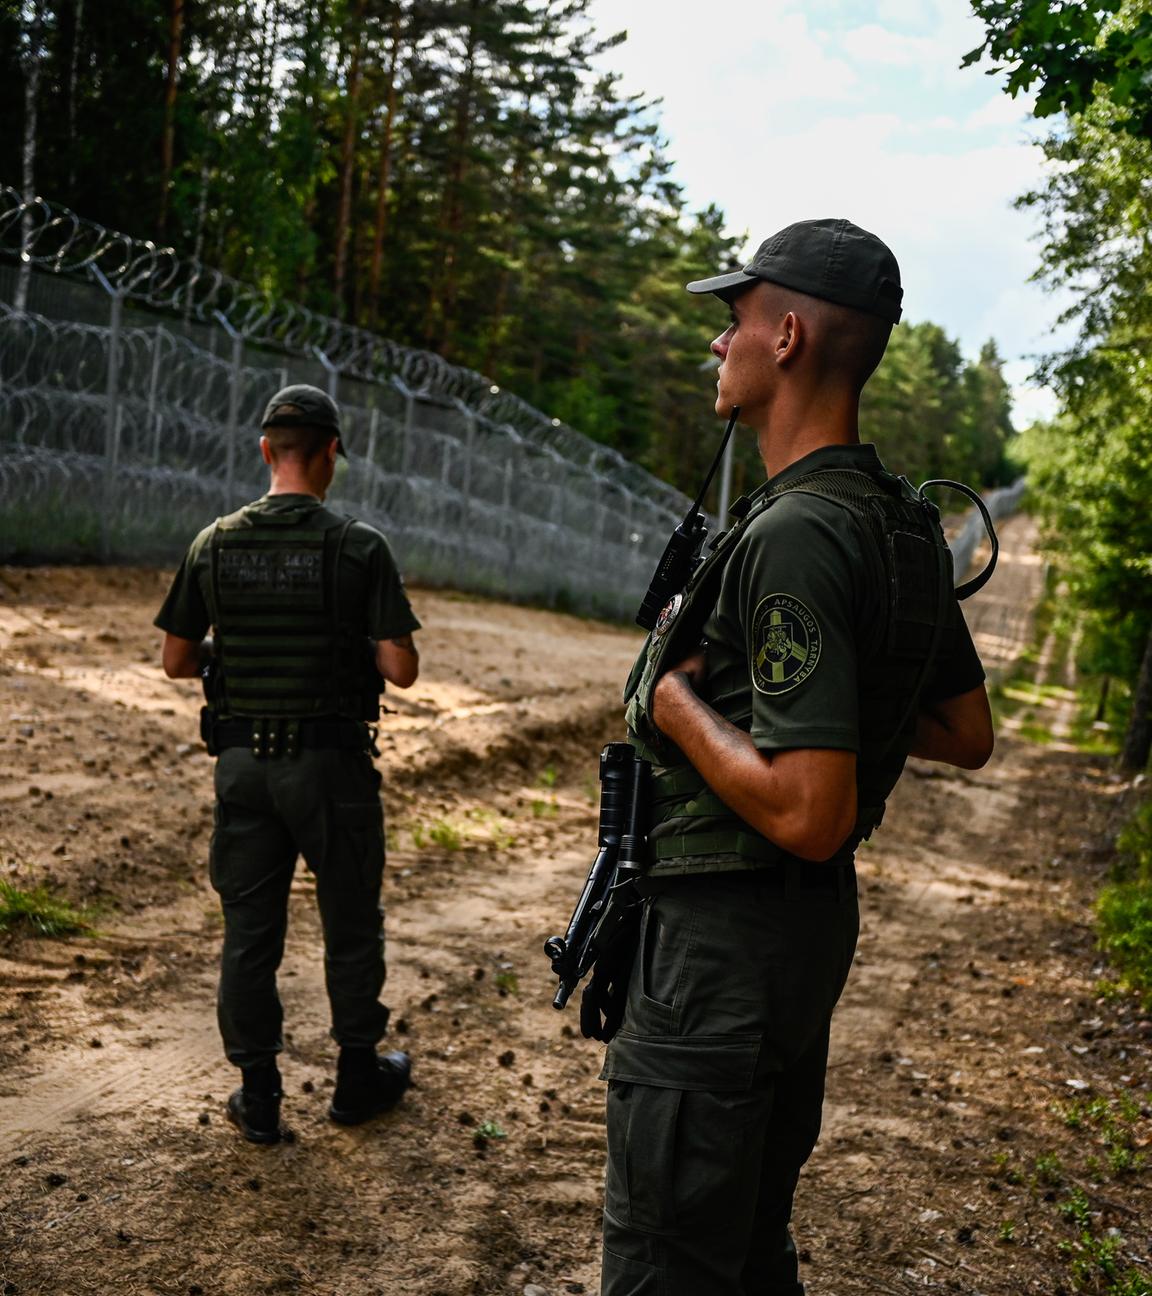 Litauische Grenzschutzbeamte patrouillieren am Metallzaun an der litauisch-belarussischen Grenze am 10.07.2023 in Dieveniskes, Litauen.